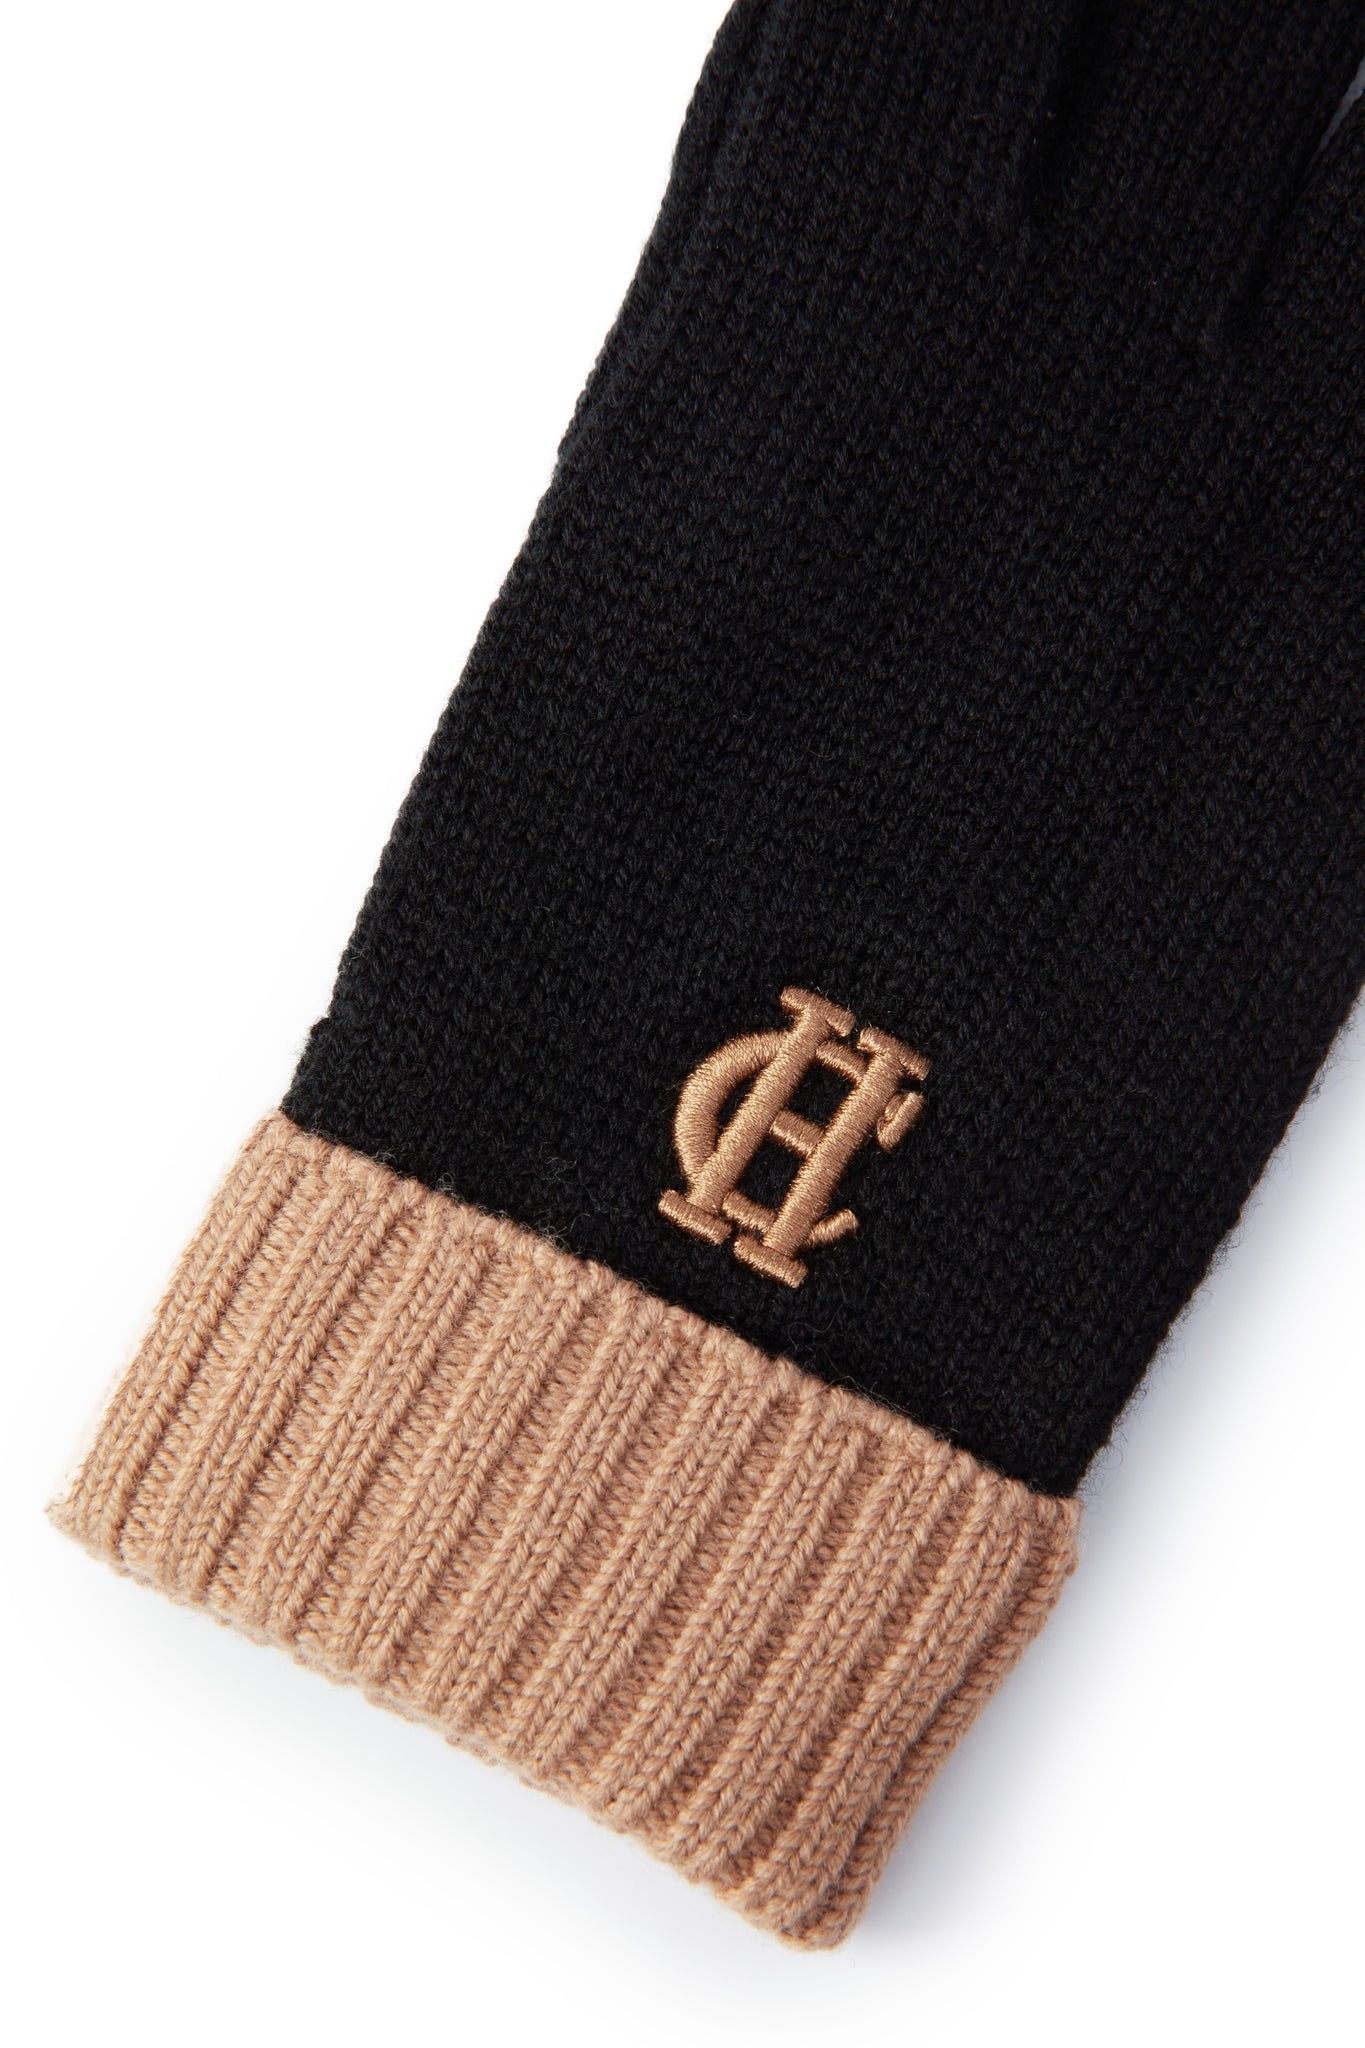 Chelsea Logo Knitted Gloves (Tan Black)